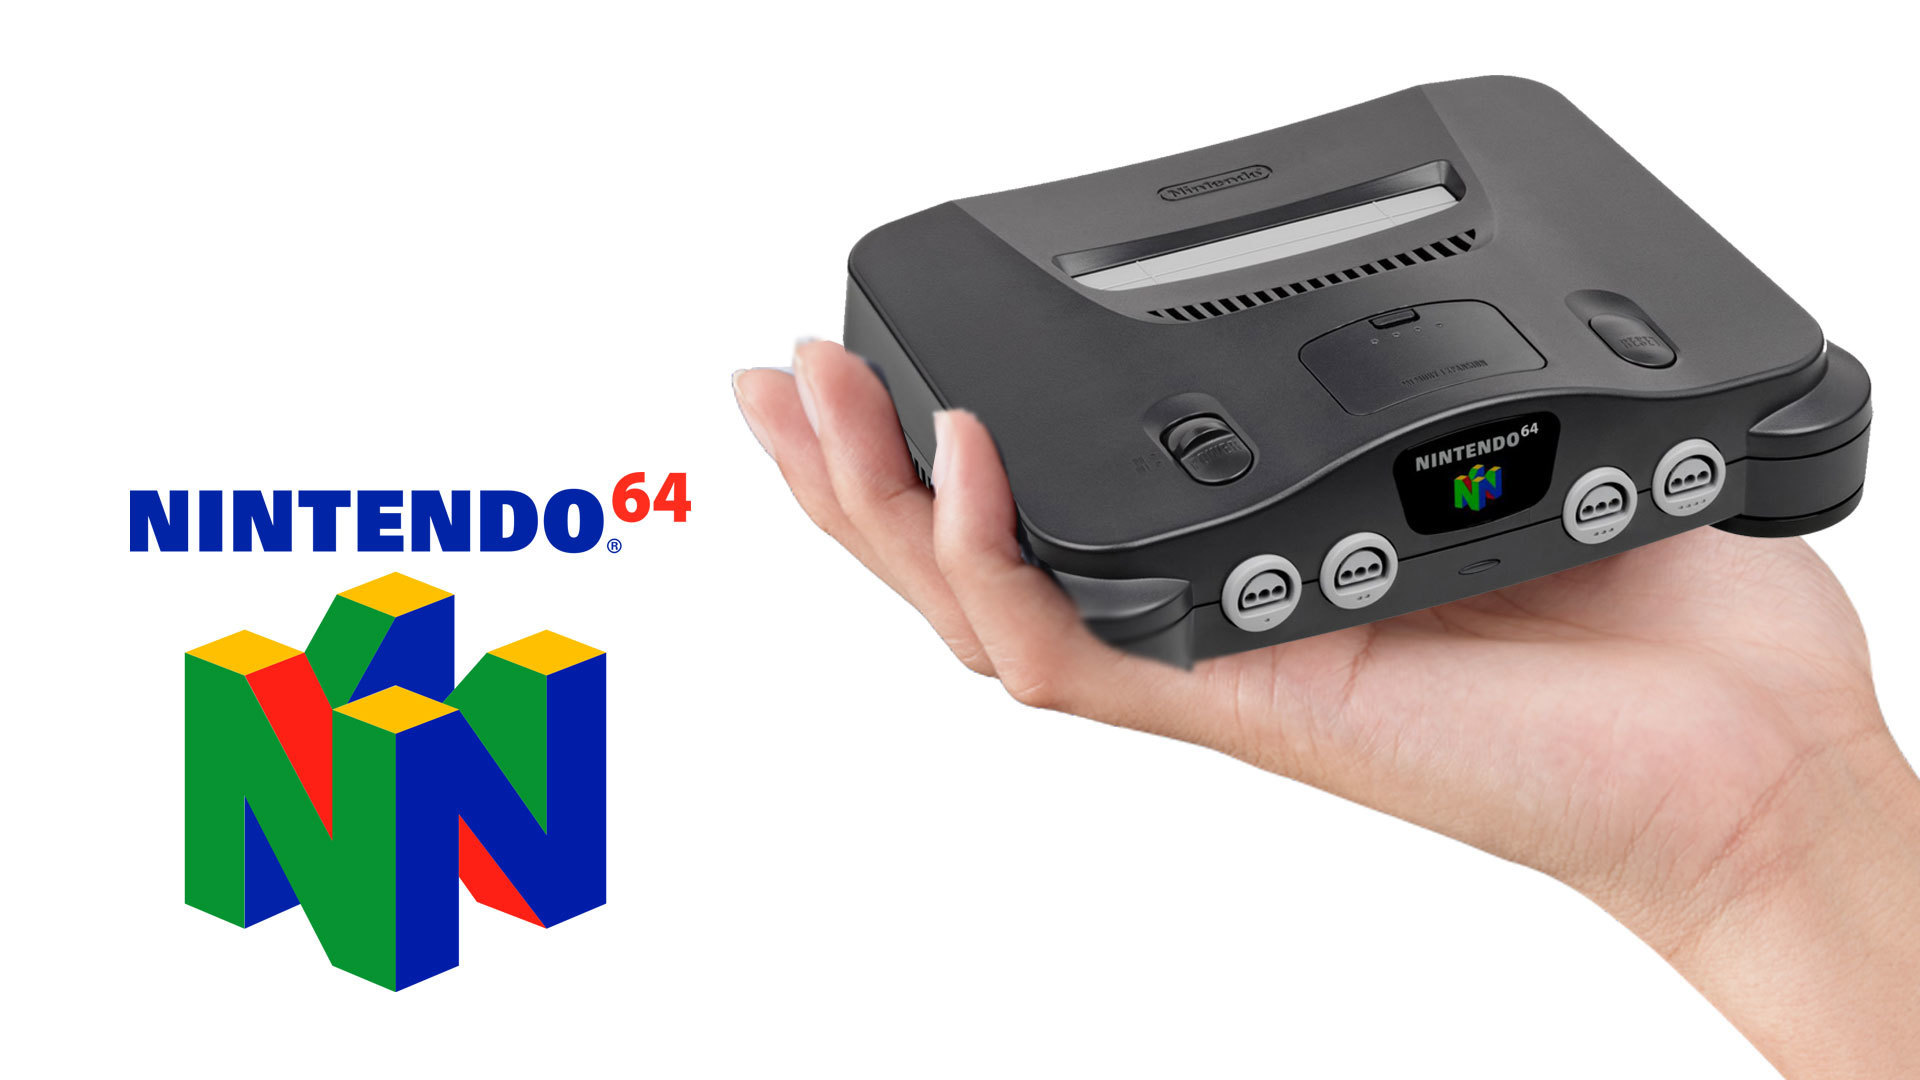 N64-classic Mini